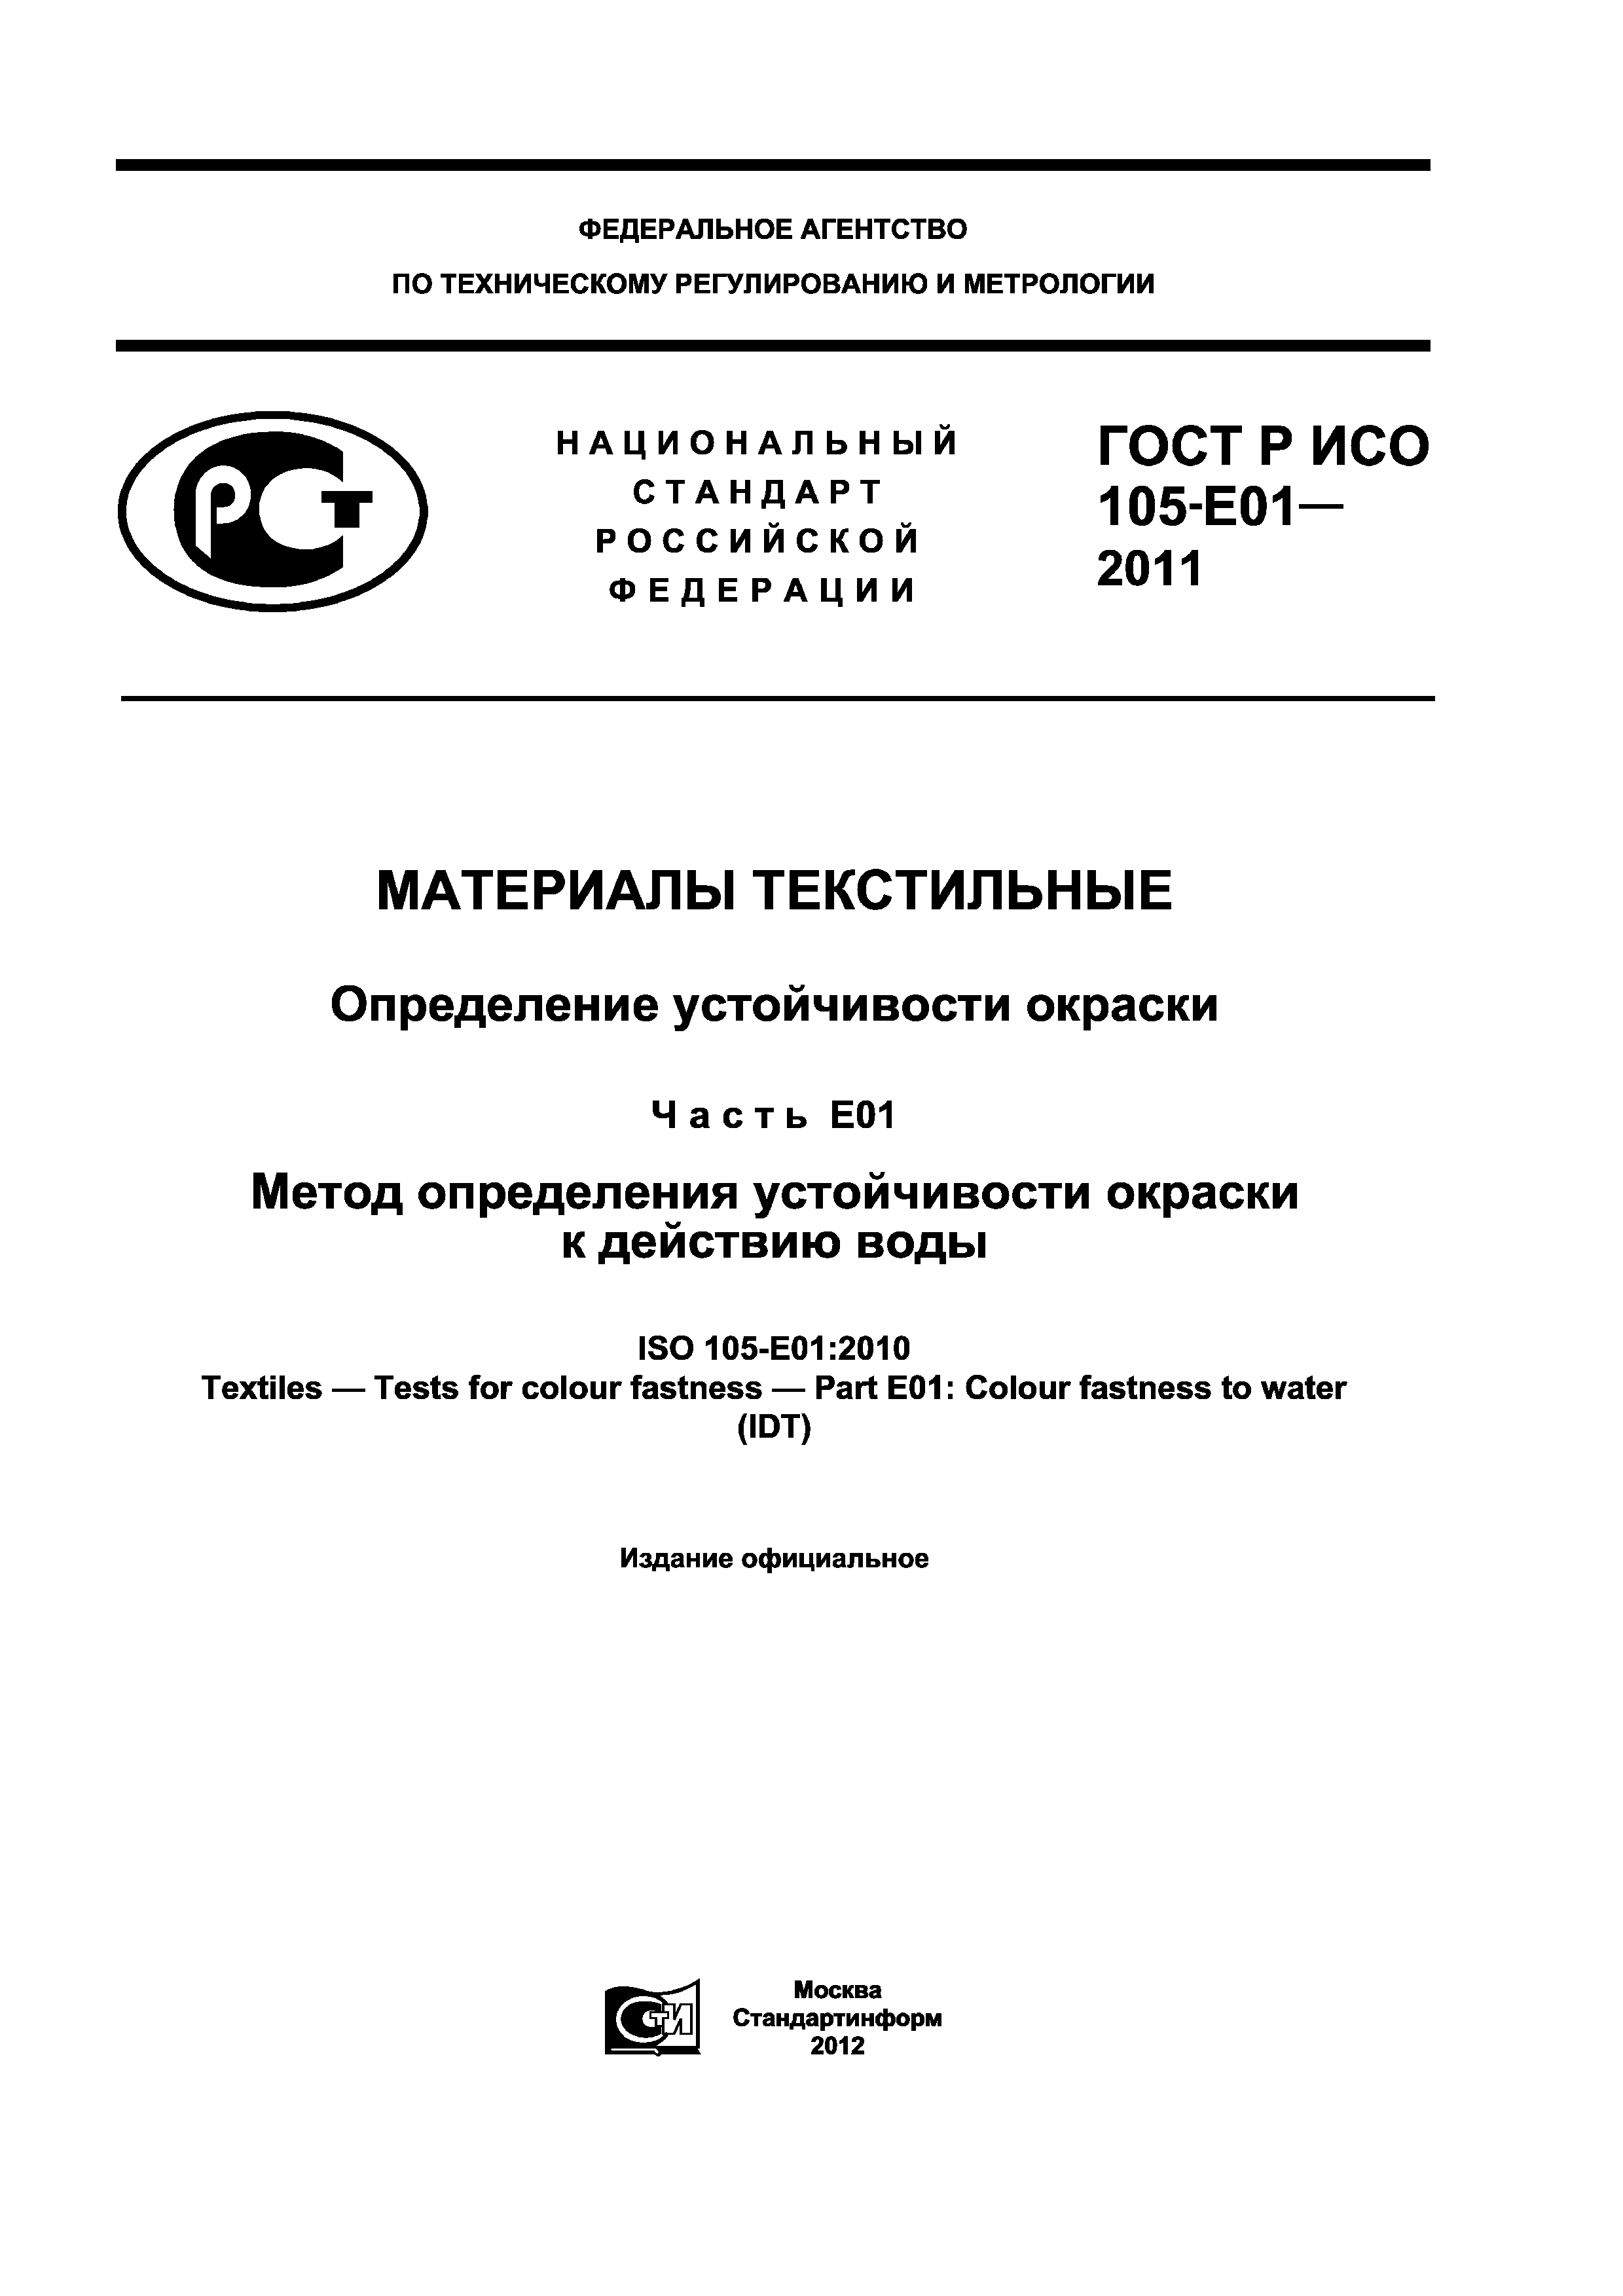 ГОСТ Р ИСО 105-E01-2011